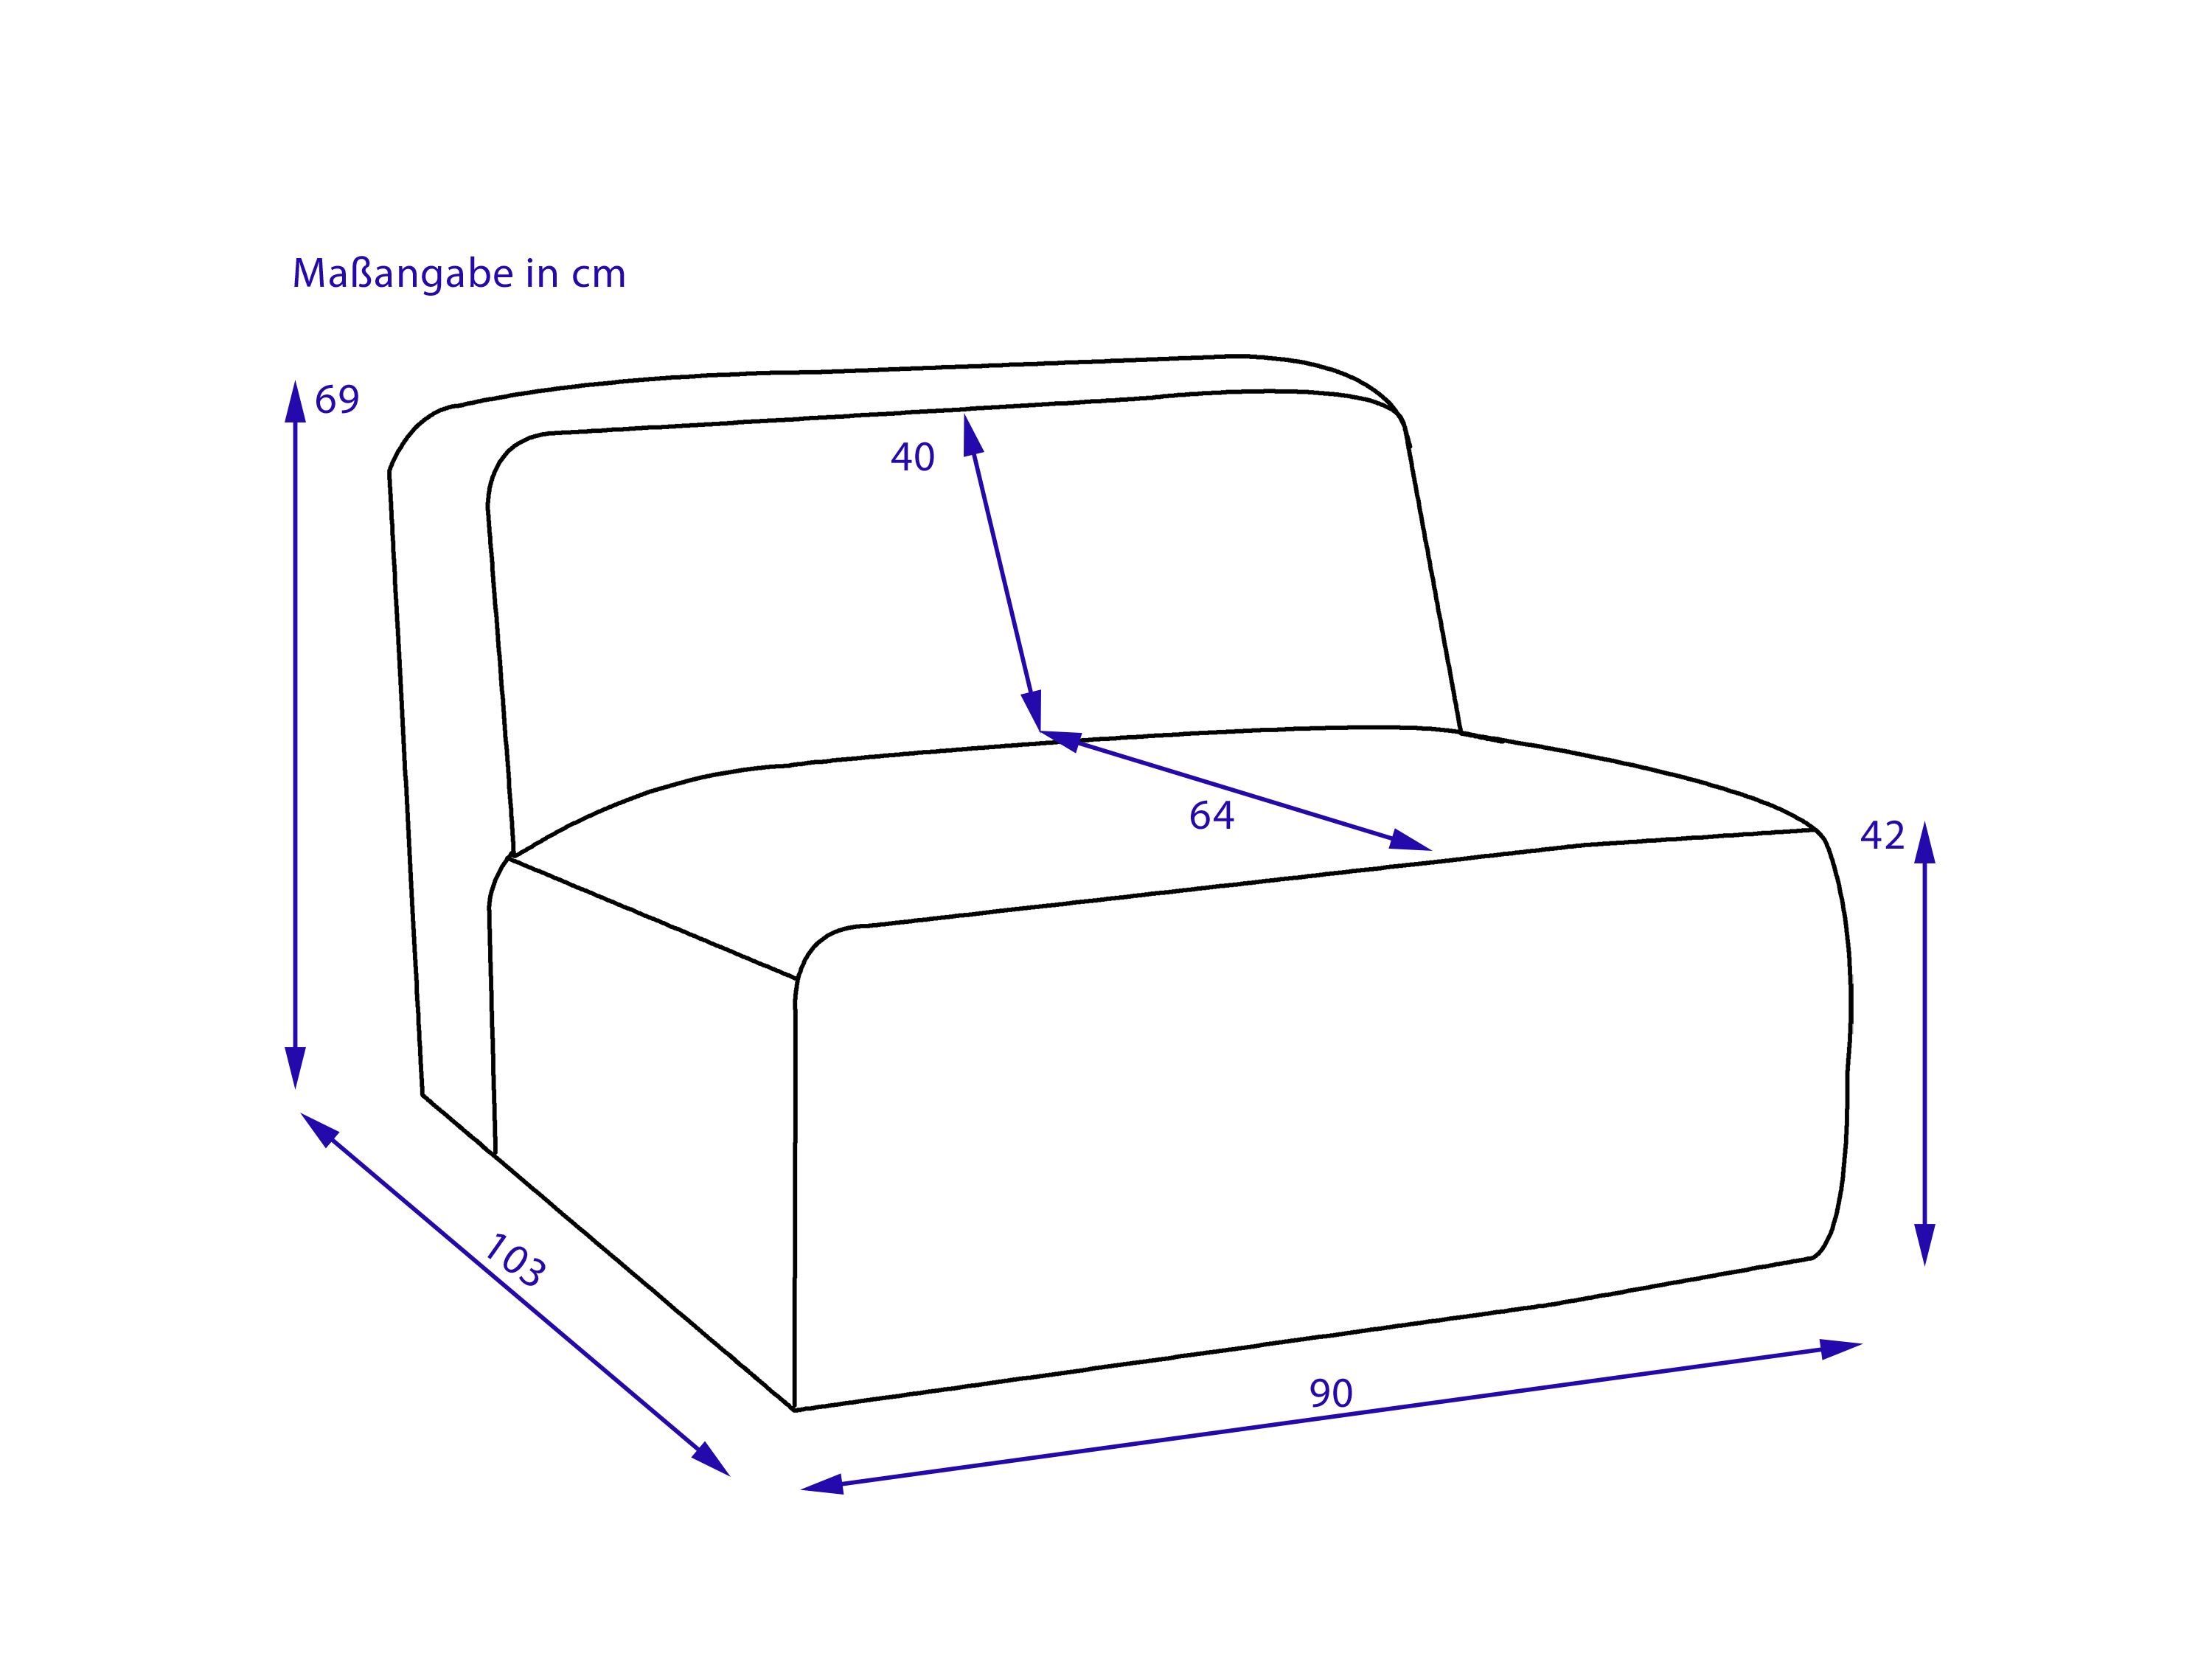 Sitzelement BEIGE SANSIBAR BHT SANSIBAR (BHT BERGEN Sofa Living Sitzelement, 88x69x101 cm) cm 88x69x101